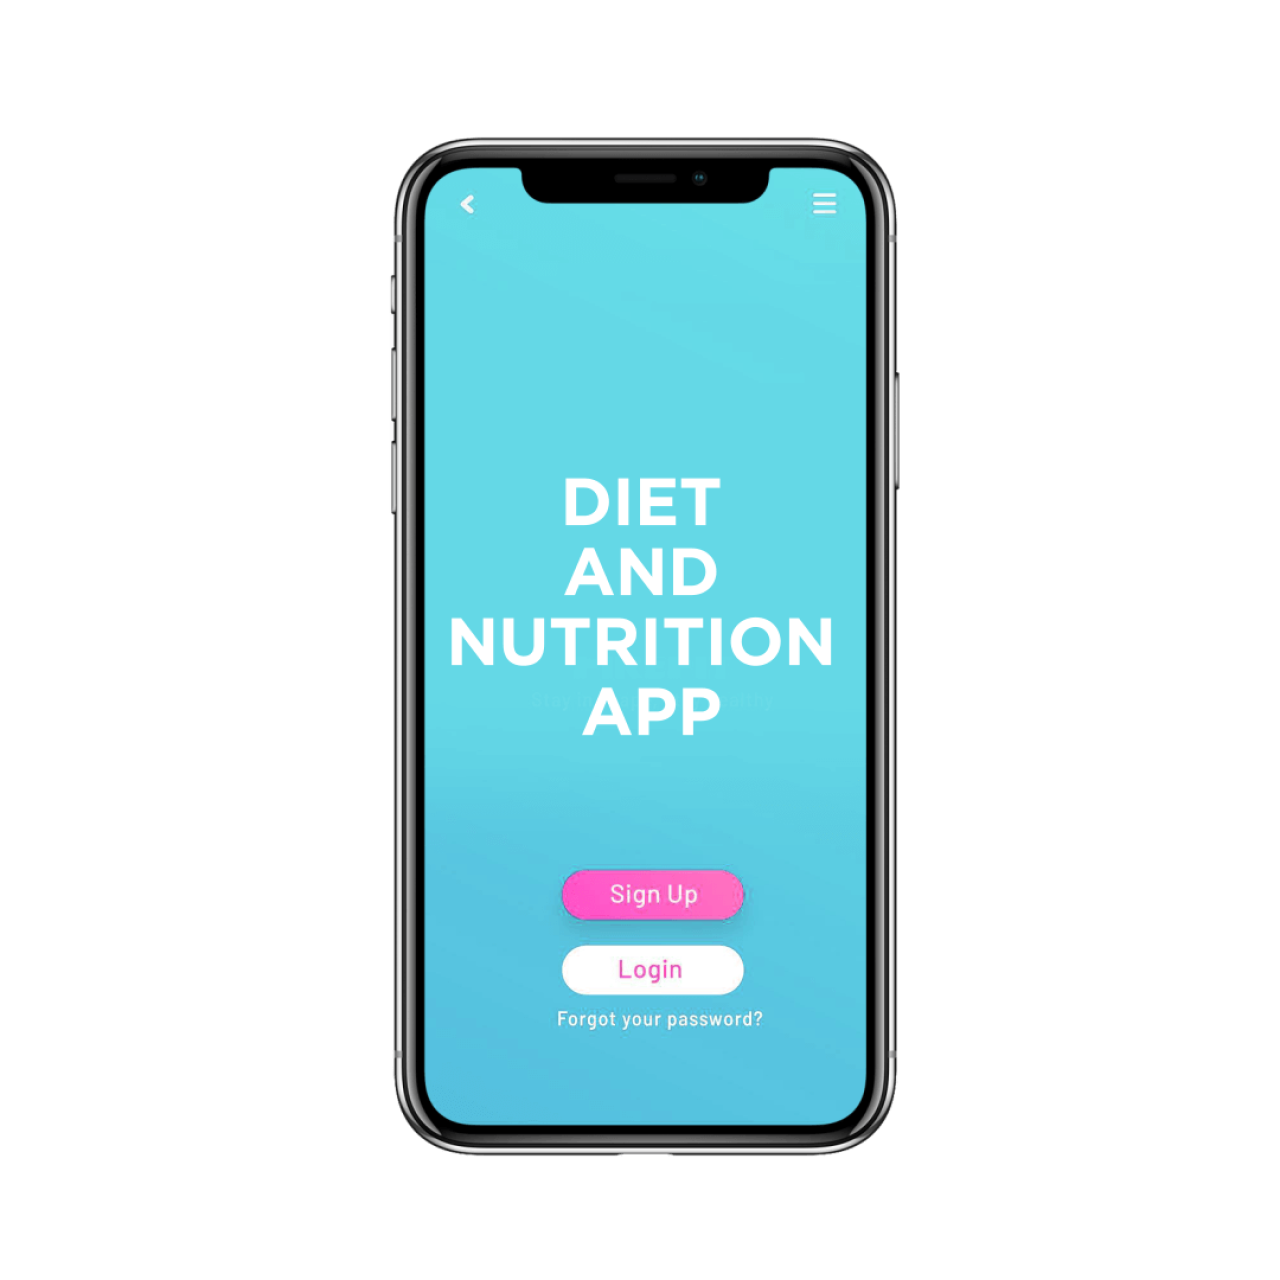 Diet and nutrition app development - login